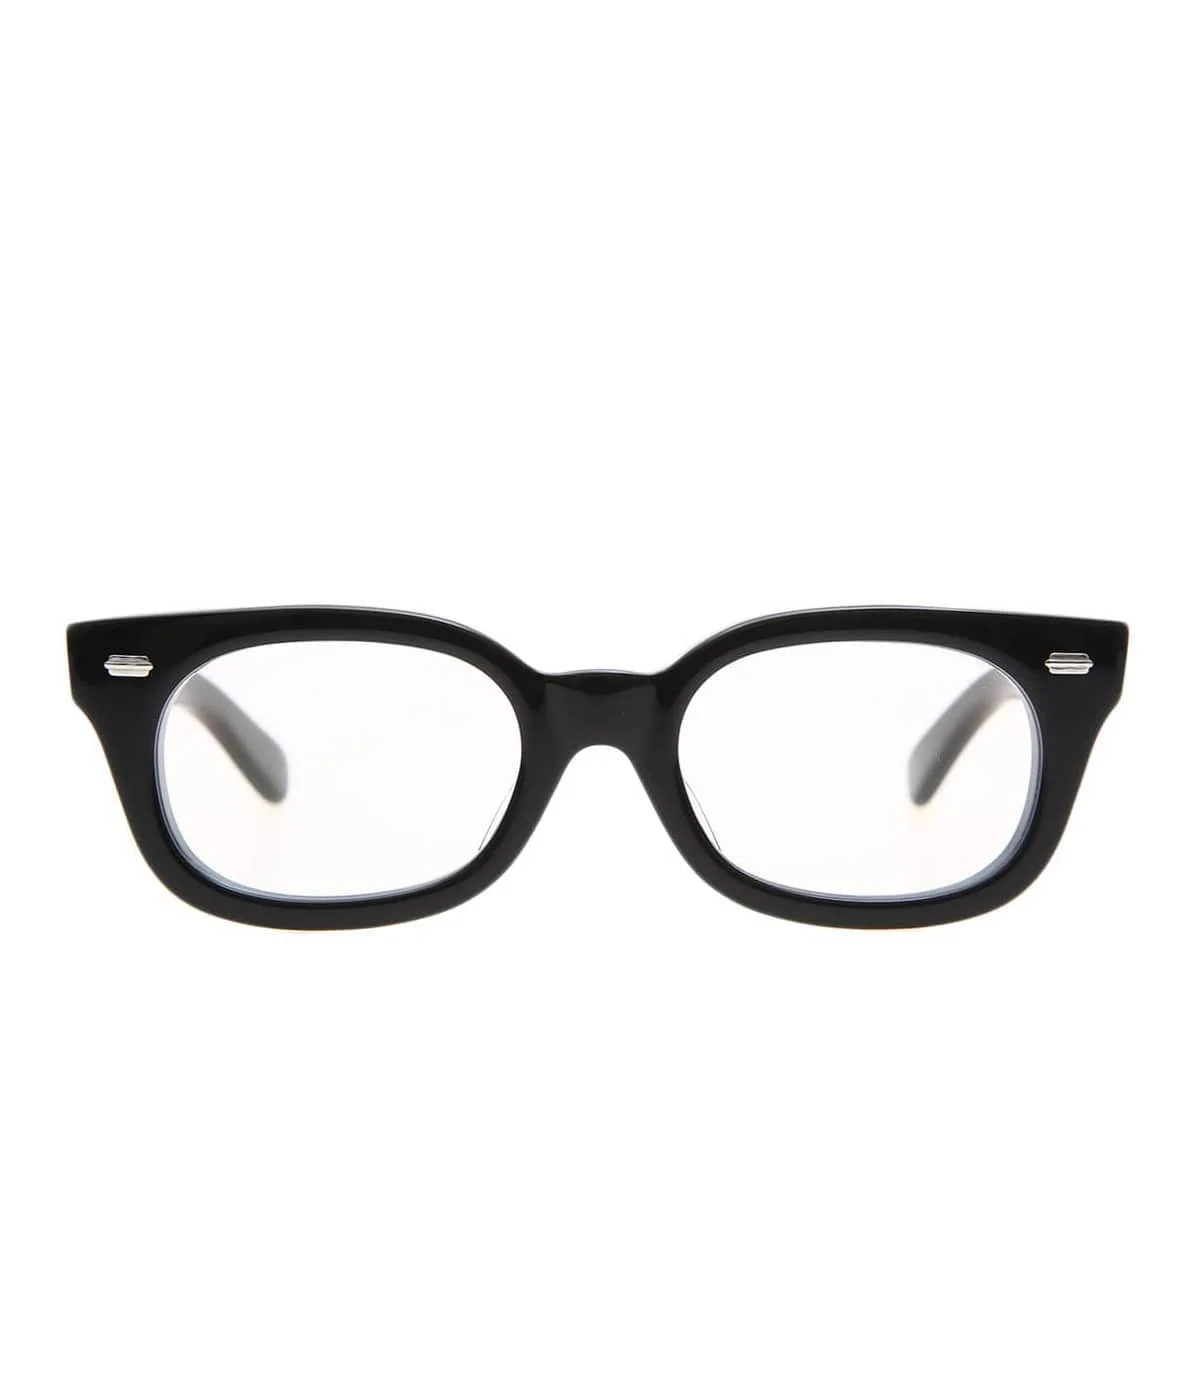 ▪️フレーム色はブラックですかEFFECTOR MUSEUMARK huzz-hs 別注 サングラス 眼鏡